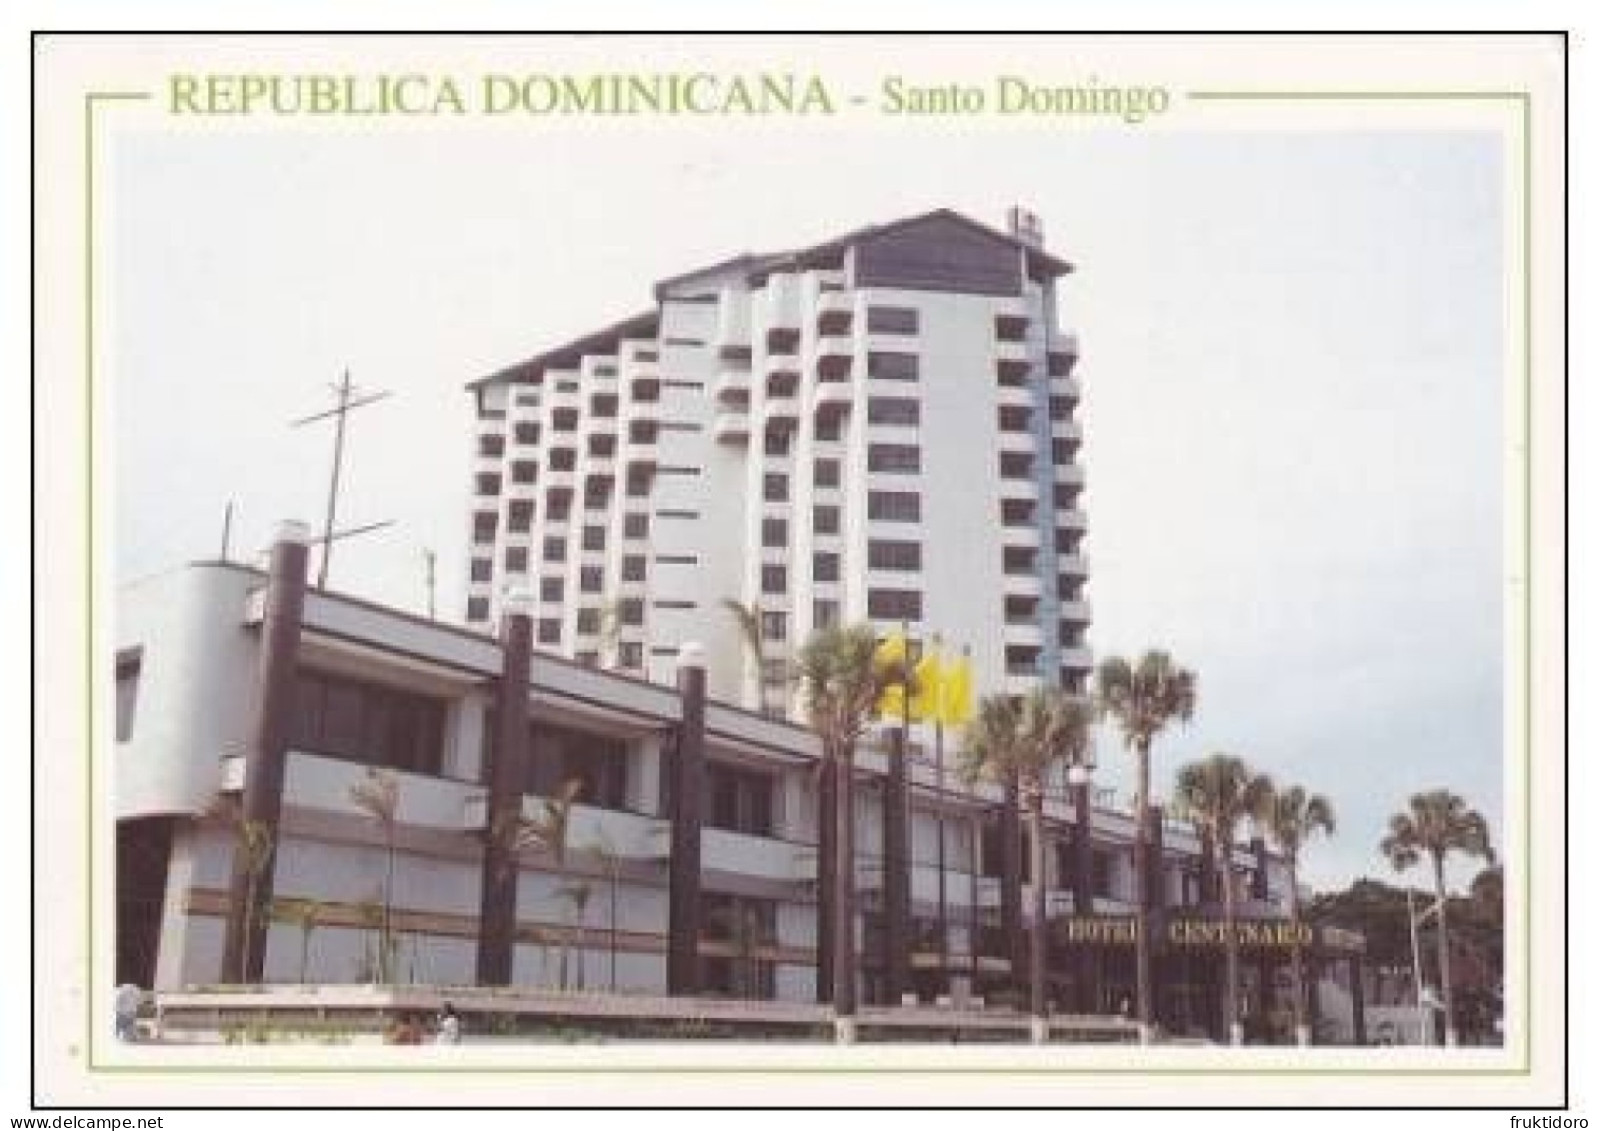 AKDO Dominican Republic Postcards Carnival La Vega - Dorada Beach - Higuey - Los Patos - Santo Domingo - Dominikanische Rep.